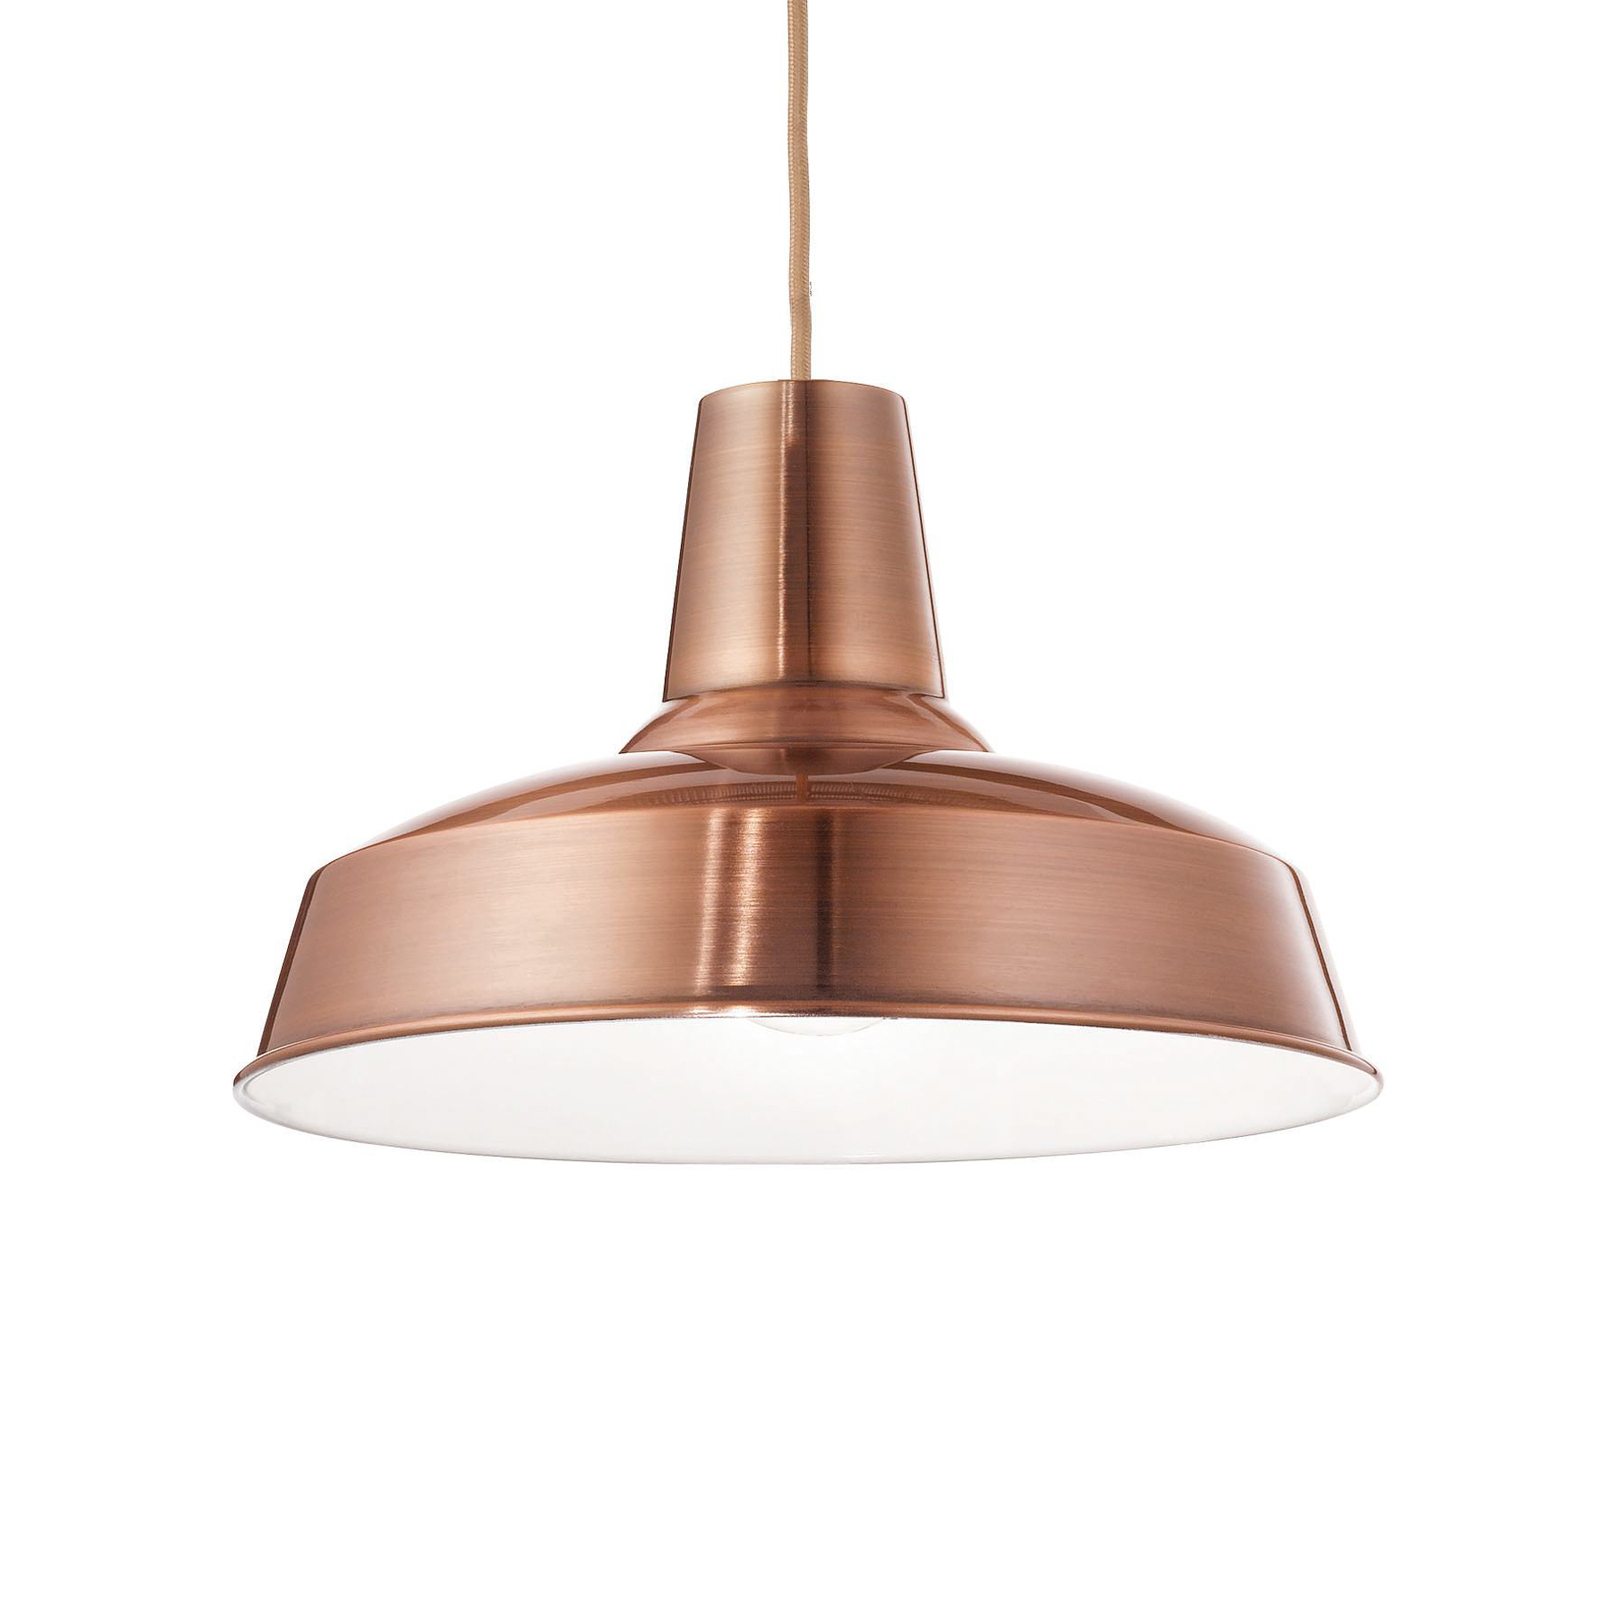 Hanglamp Ideal Lux Moby, koperkleurig, metaal, Ø 35 cm